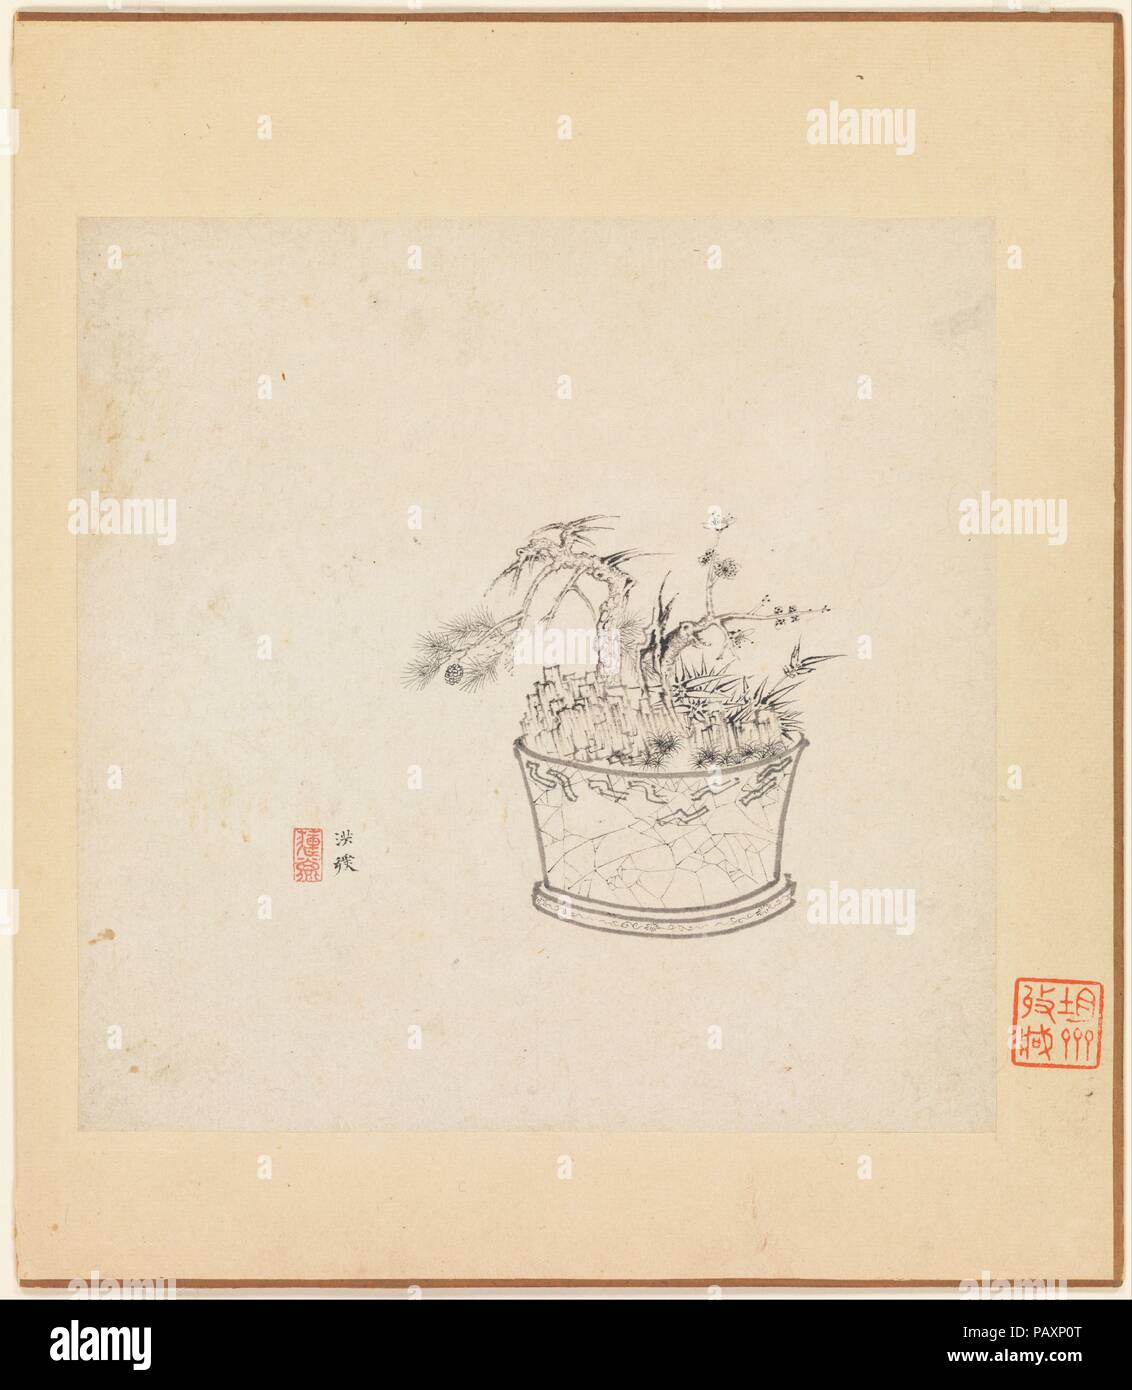 Verschiedene Studien. Artist: Chen Hongshou (Chinesisch, 1598-1652). Kultur: China. Abmessungen: Bild (jedes Blatt): 7 x 7 in. (17,8 x 17,8 cm). Datum: ein Blatt vom 1619. Dieses Album spielt mit dem Thema der Realität versus Illusion. Der Mond wird in ein Wasserbecken wider, eine Blume neben dem Bild in einem Spiegel, und ein Schmetterling ist zu den Chrysanthemen auf einer Seide Fan malte angezogen. Chen betonte die mehrere Ebenen seiner Künstlichkeit auf diesem Album Leaf durch seine Unterschrift in der Zusammensetzung der Ventilator Malerei und durch das Screening ein Flügel des Schmetterlings mit dem Ventilator, um uns zu zwingen, Stockfoto